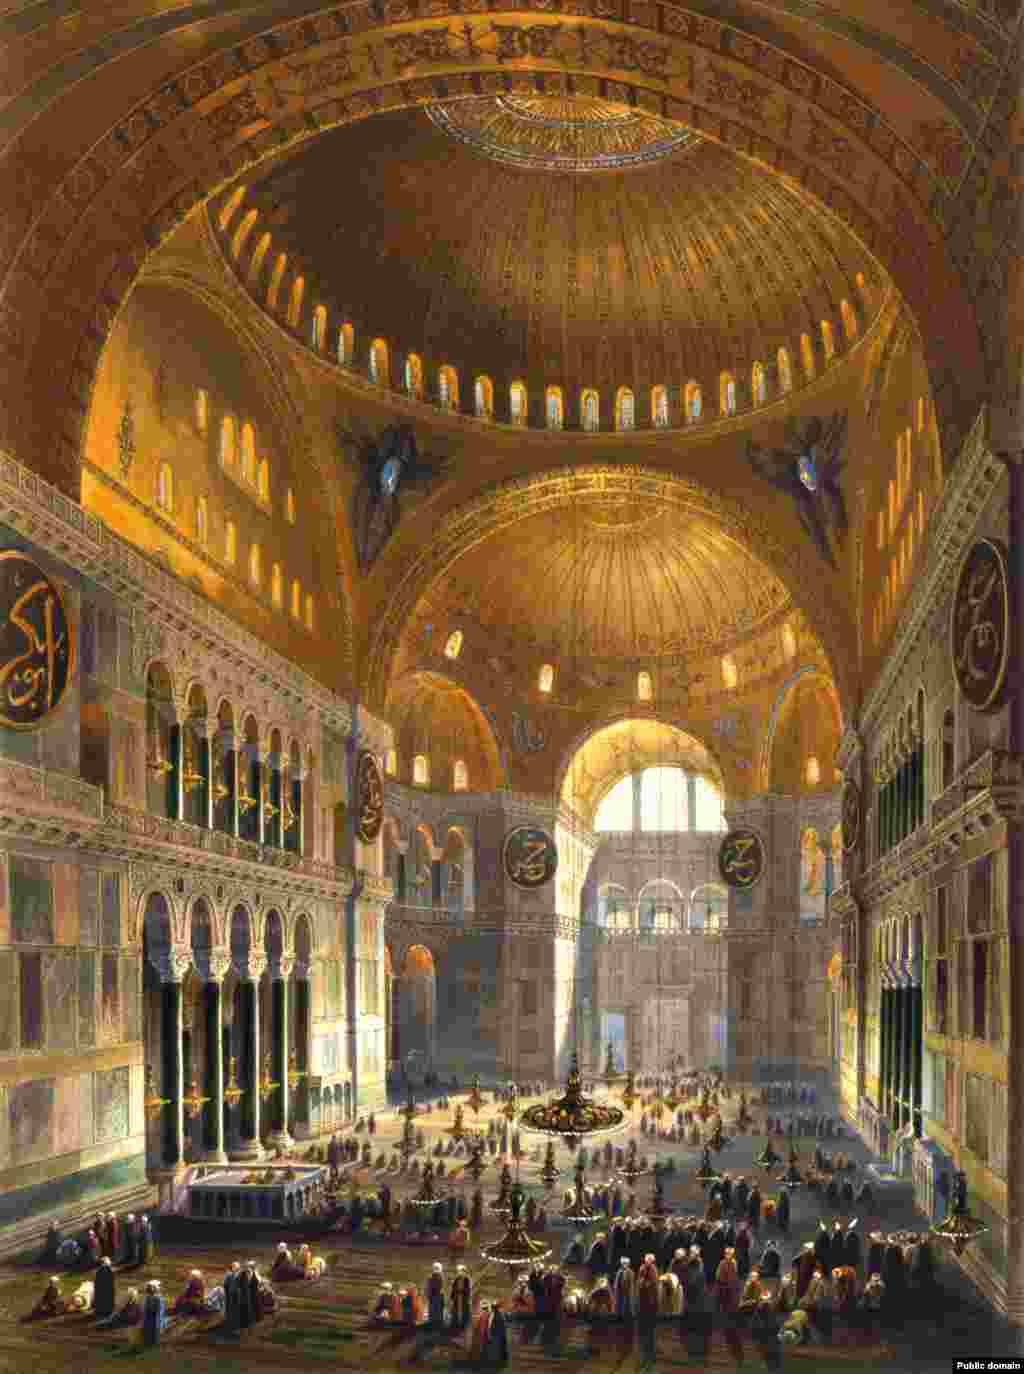 Иллюстрация 1852 года, запечатлевшая мусульман, молящихся в Айя-Софии, являвшейся тогда мечетью.&nbsp; Храм прослужил мечетью почти 500 лет. Христианские иконы в нем были замазаны или уничтожены